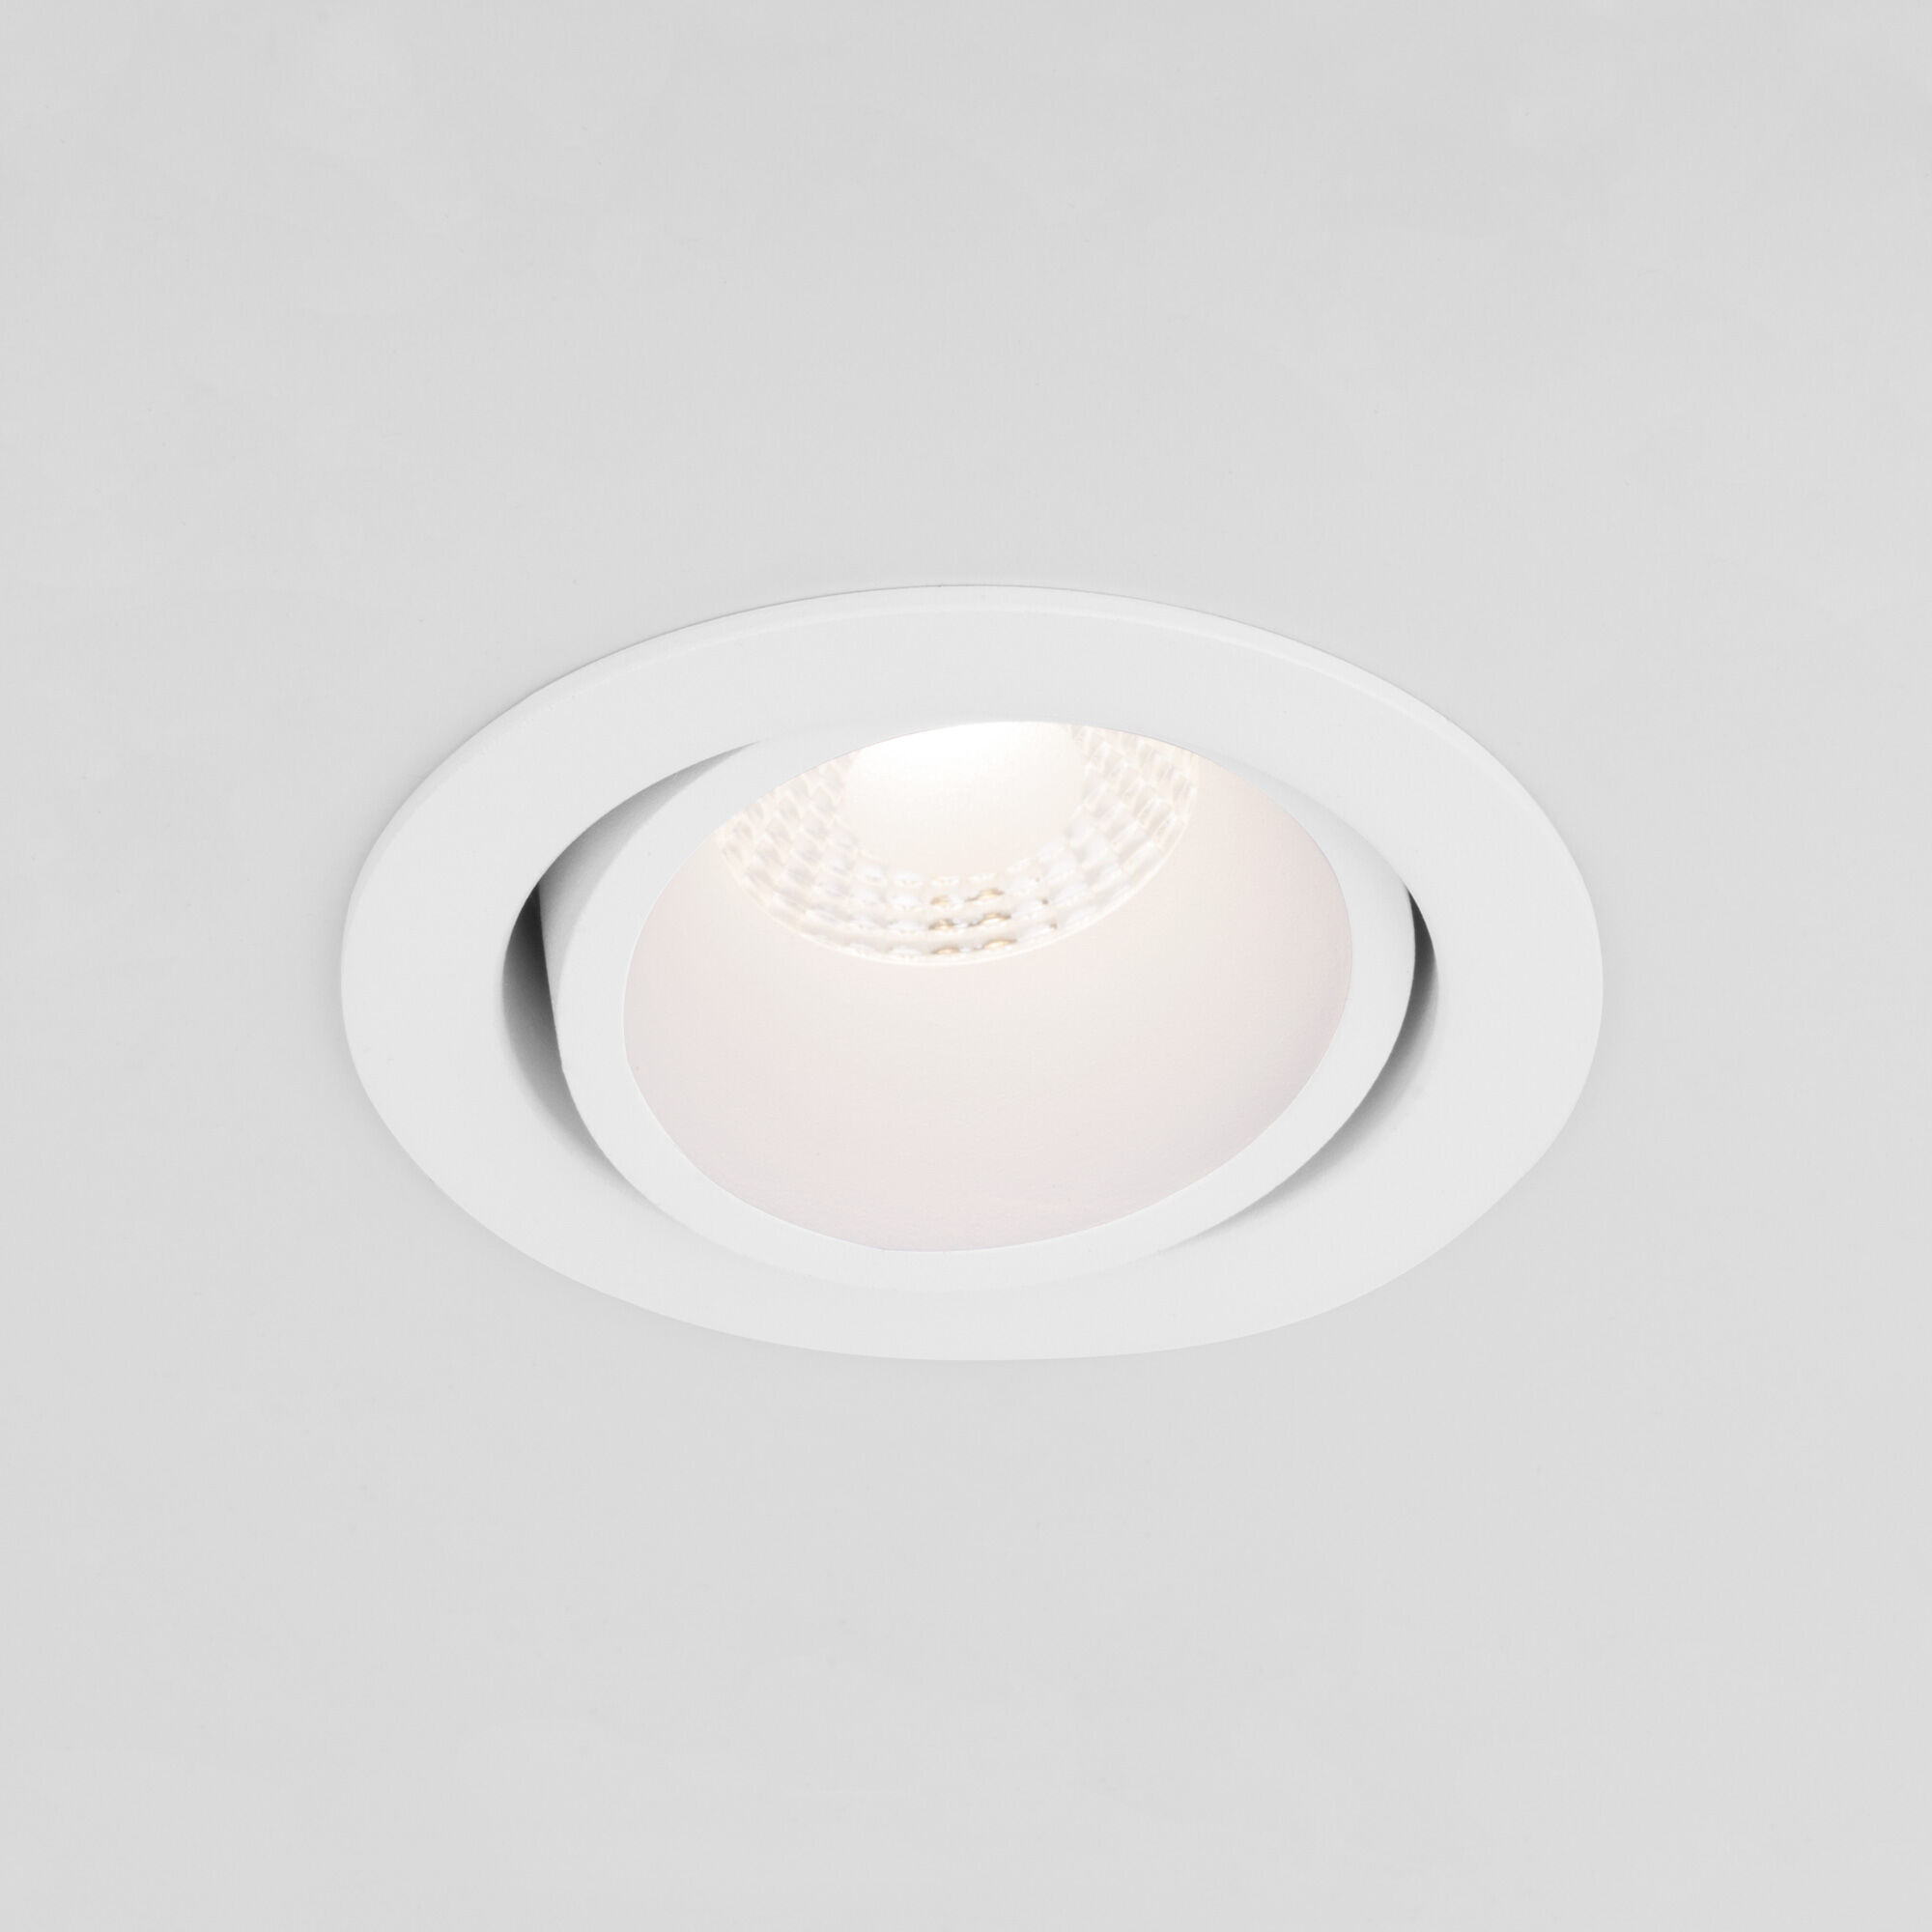 Встраиваемый светодиодный светильник 7W 3000K WH/WH белый/белый 15267/LED